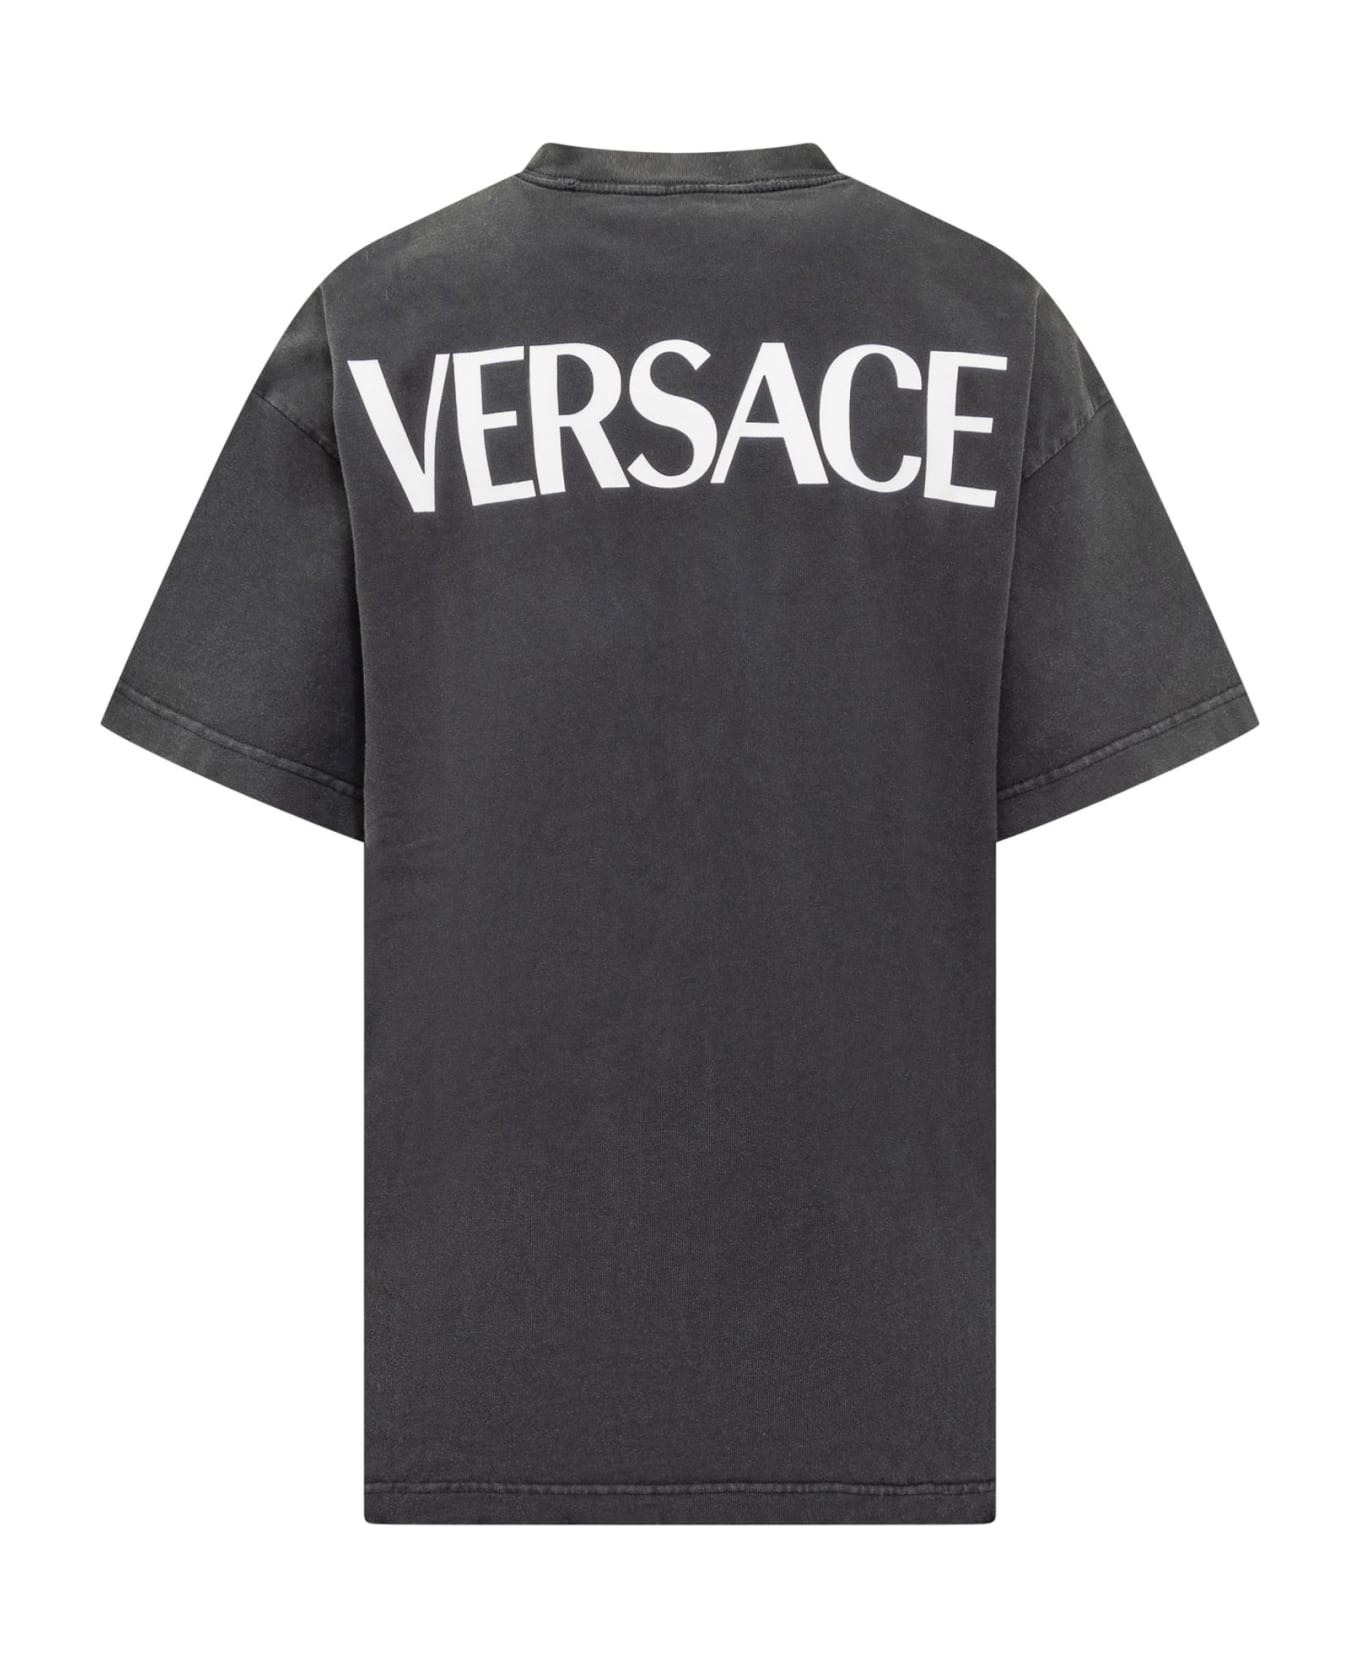 Versace Goddess Oversized T-shirt - Black Tシャツ